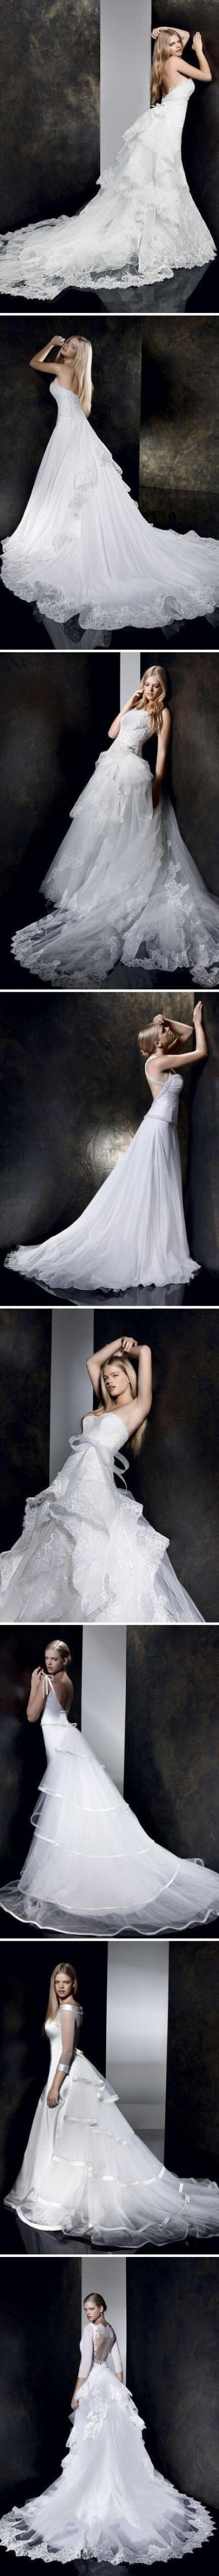 2013系列婚纱，蕾丝、钉珠、薄纱、蝴蝶结，超美的裙摆，婀娜动人！